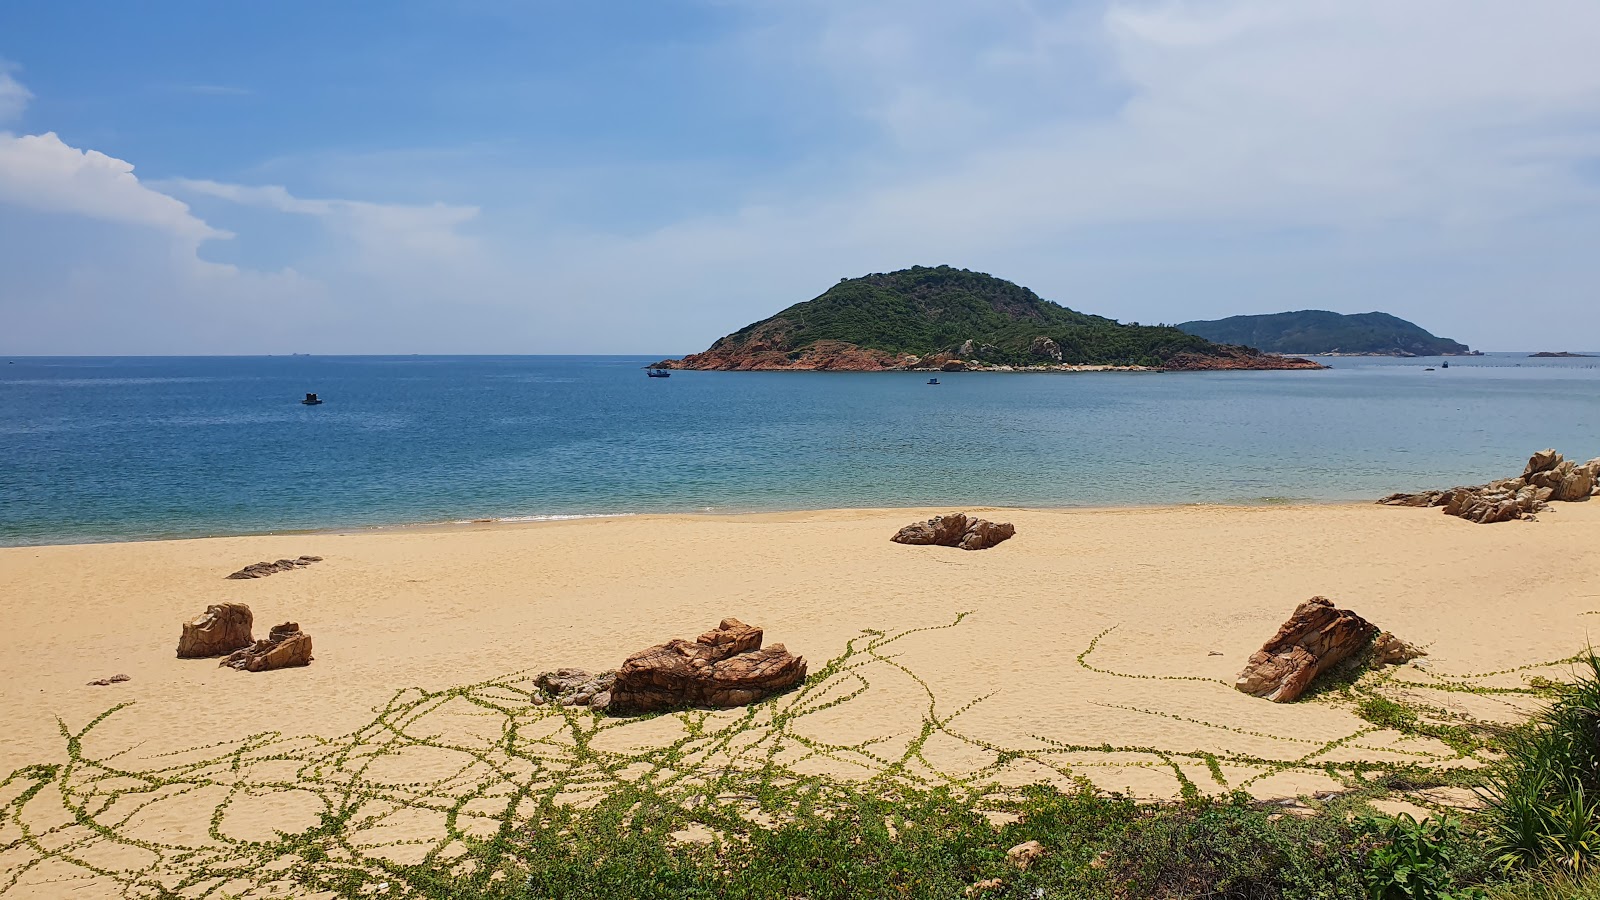 Fotografie cu Bai Xep Beach - locul popular printre cunoscătorii de relaxare